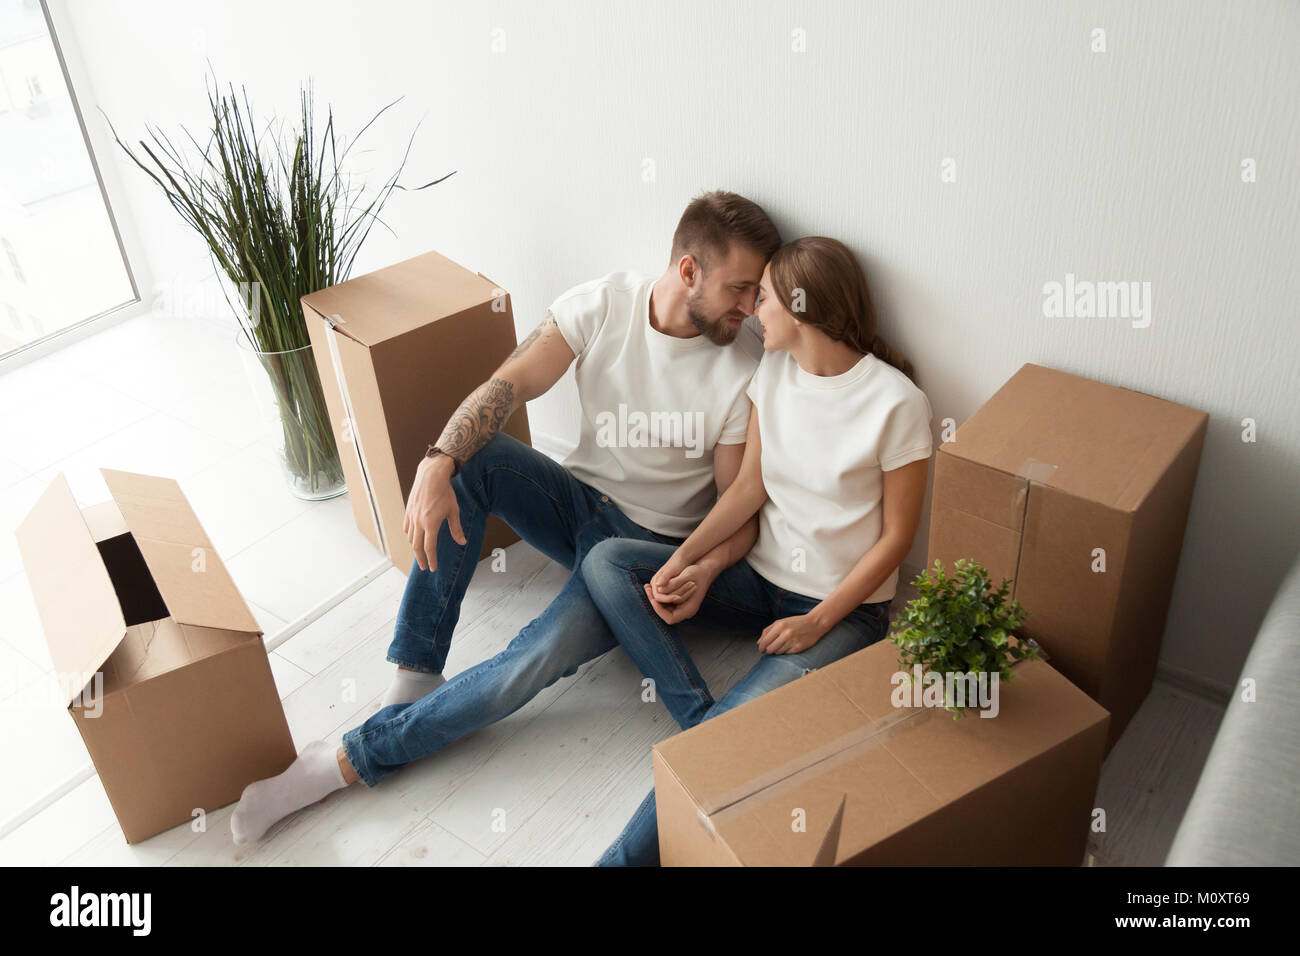 Junges Paar bonding sitzen auf dem Boden mit beweglichen Kästen Stockfoto